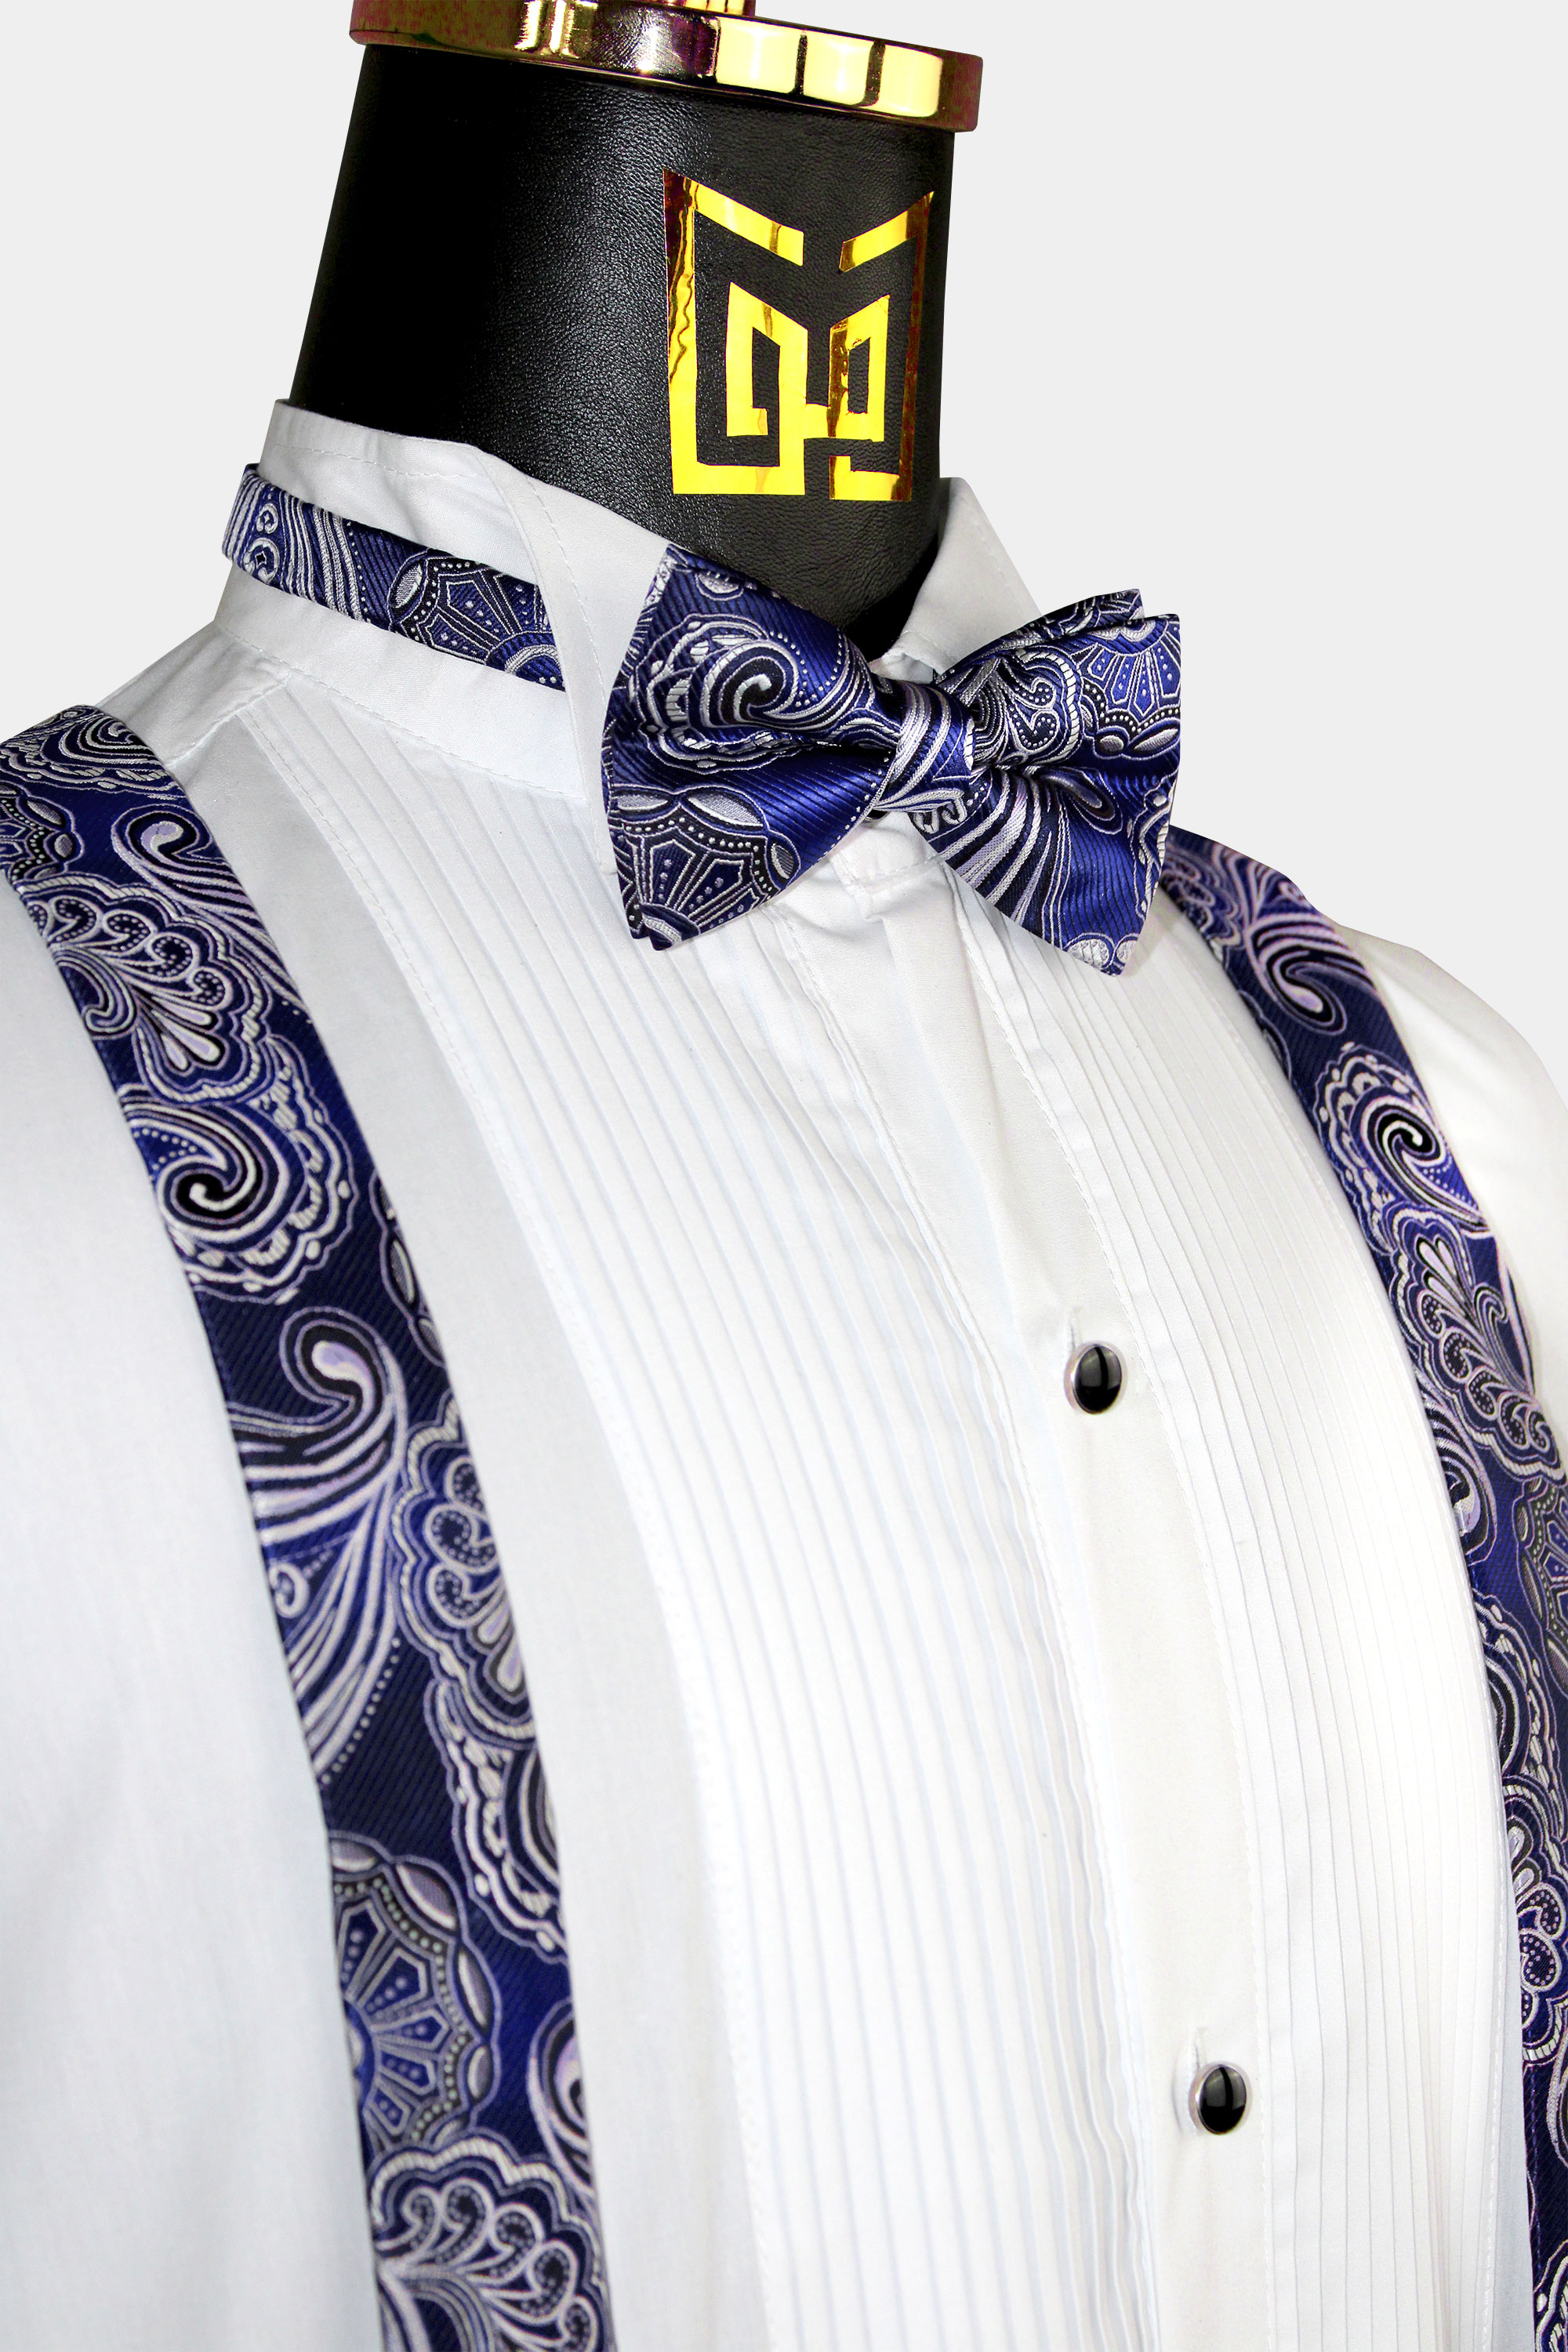 Cobalt-Blue-Suspenders-and-Bow-Tie-Set-Wedding-Groomsmen-from-Gentlemansguru.com